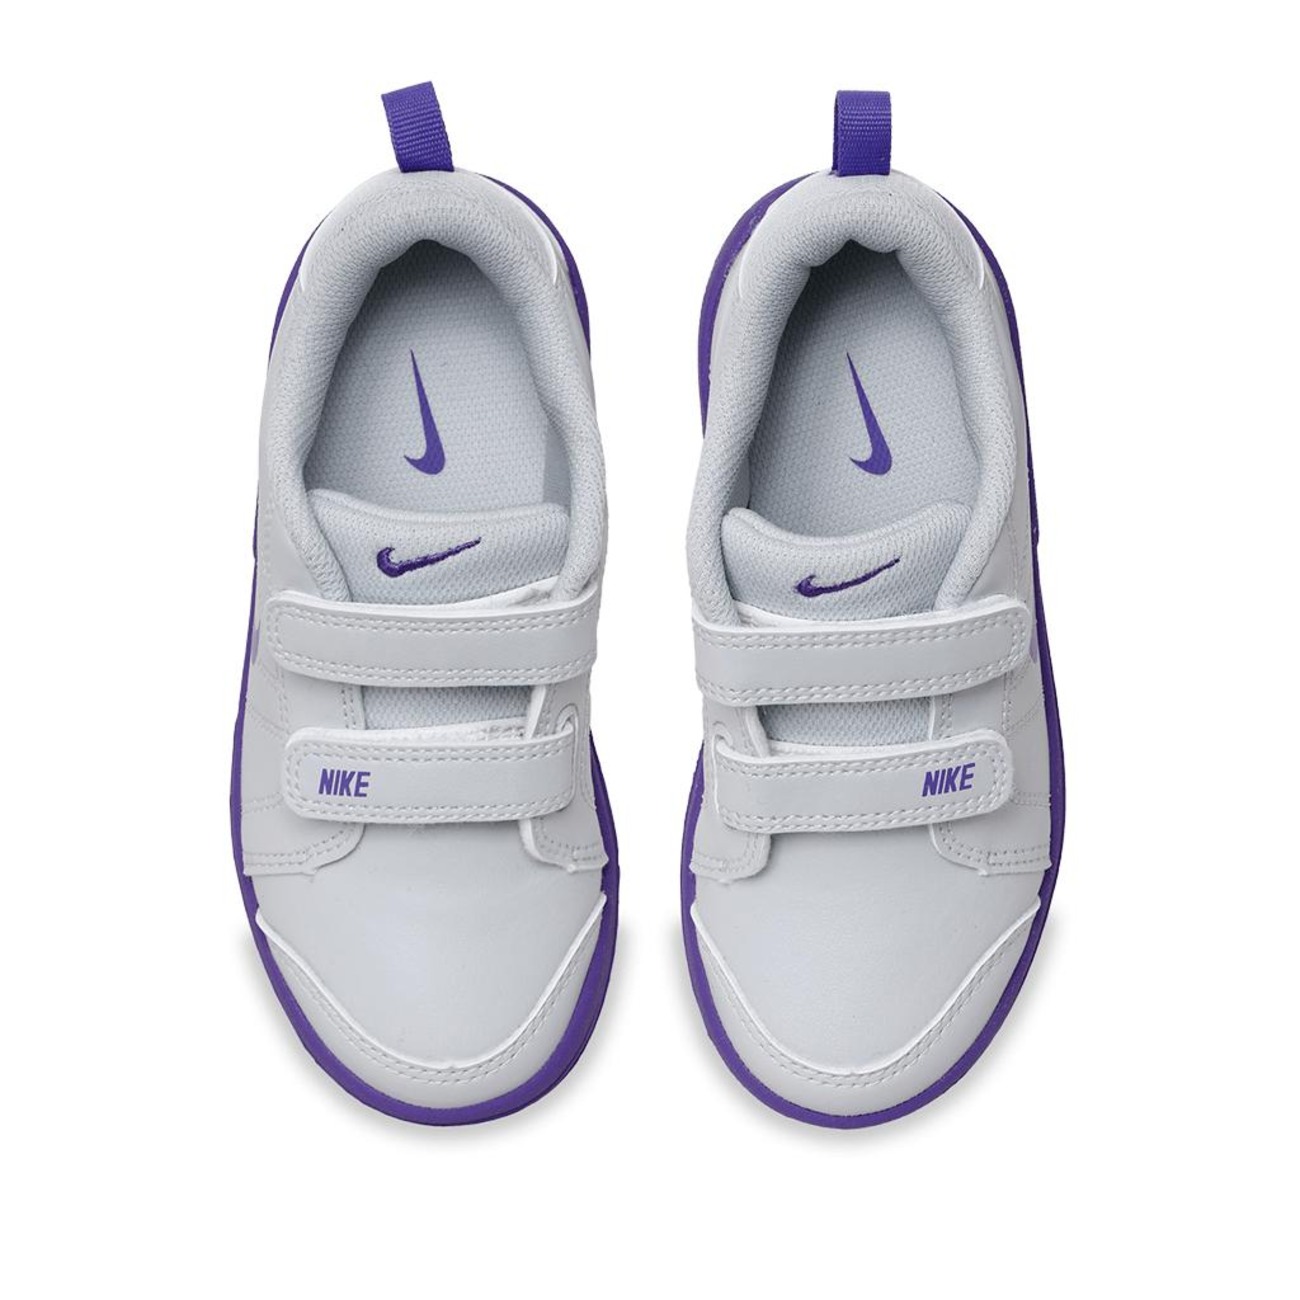 Tênis Nike Pico LT Infantil - Foto 3